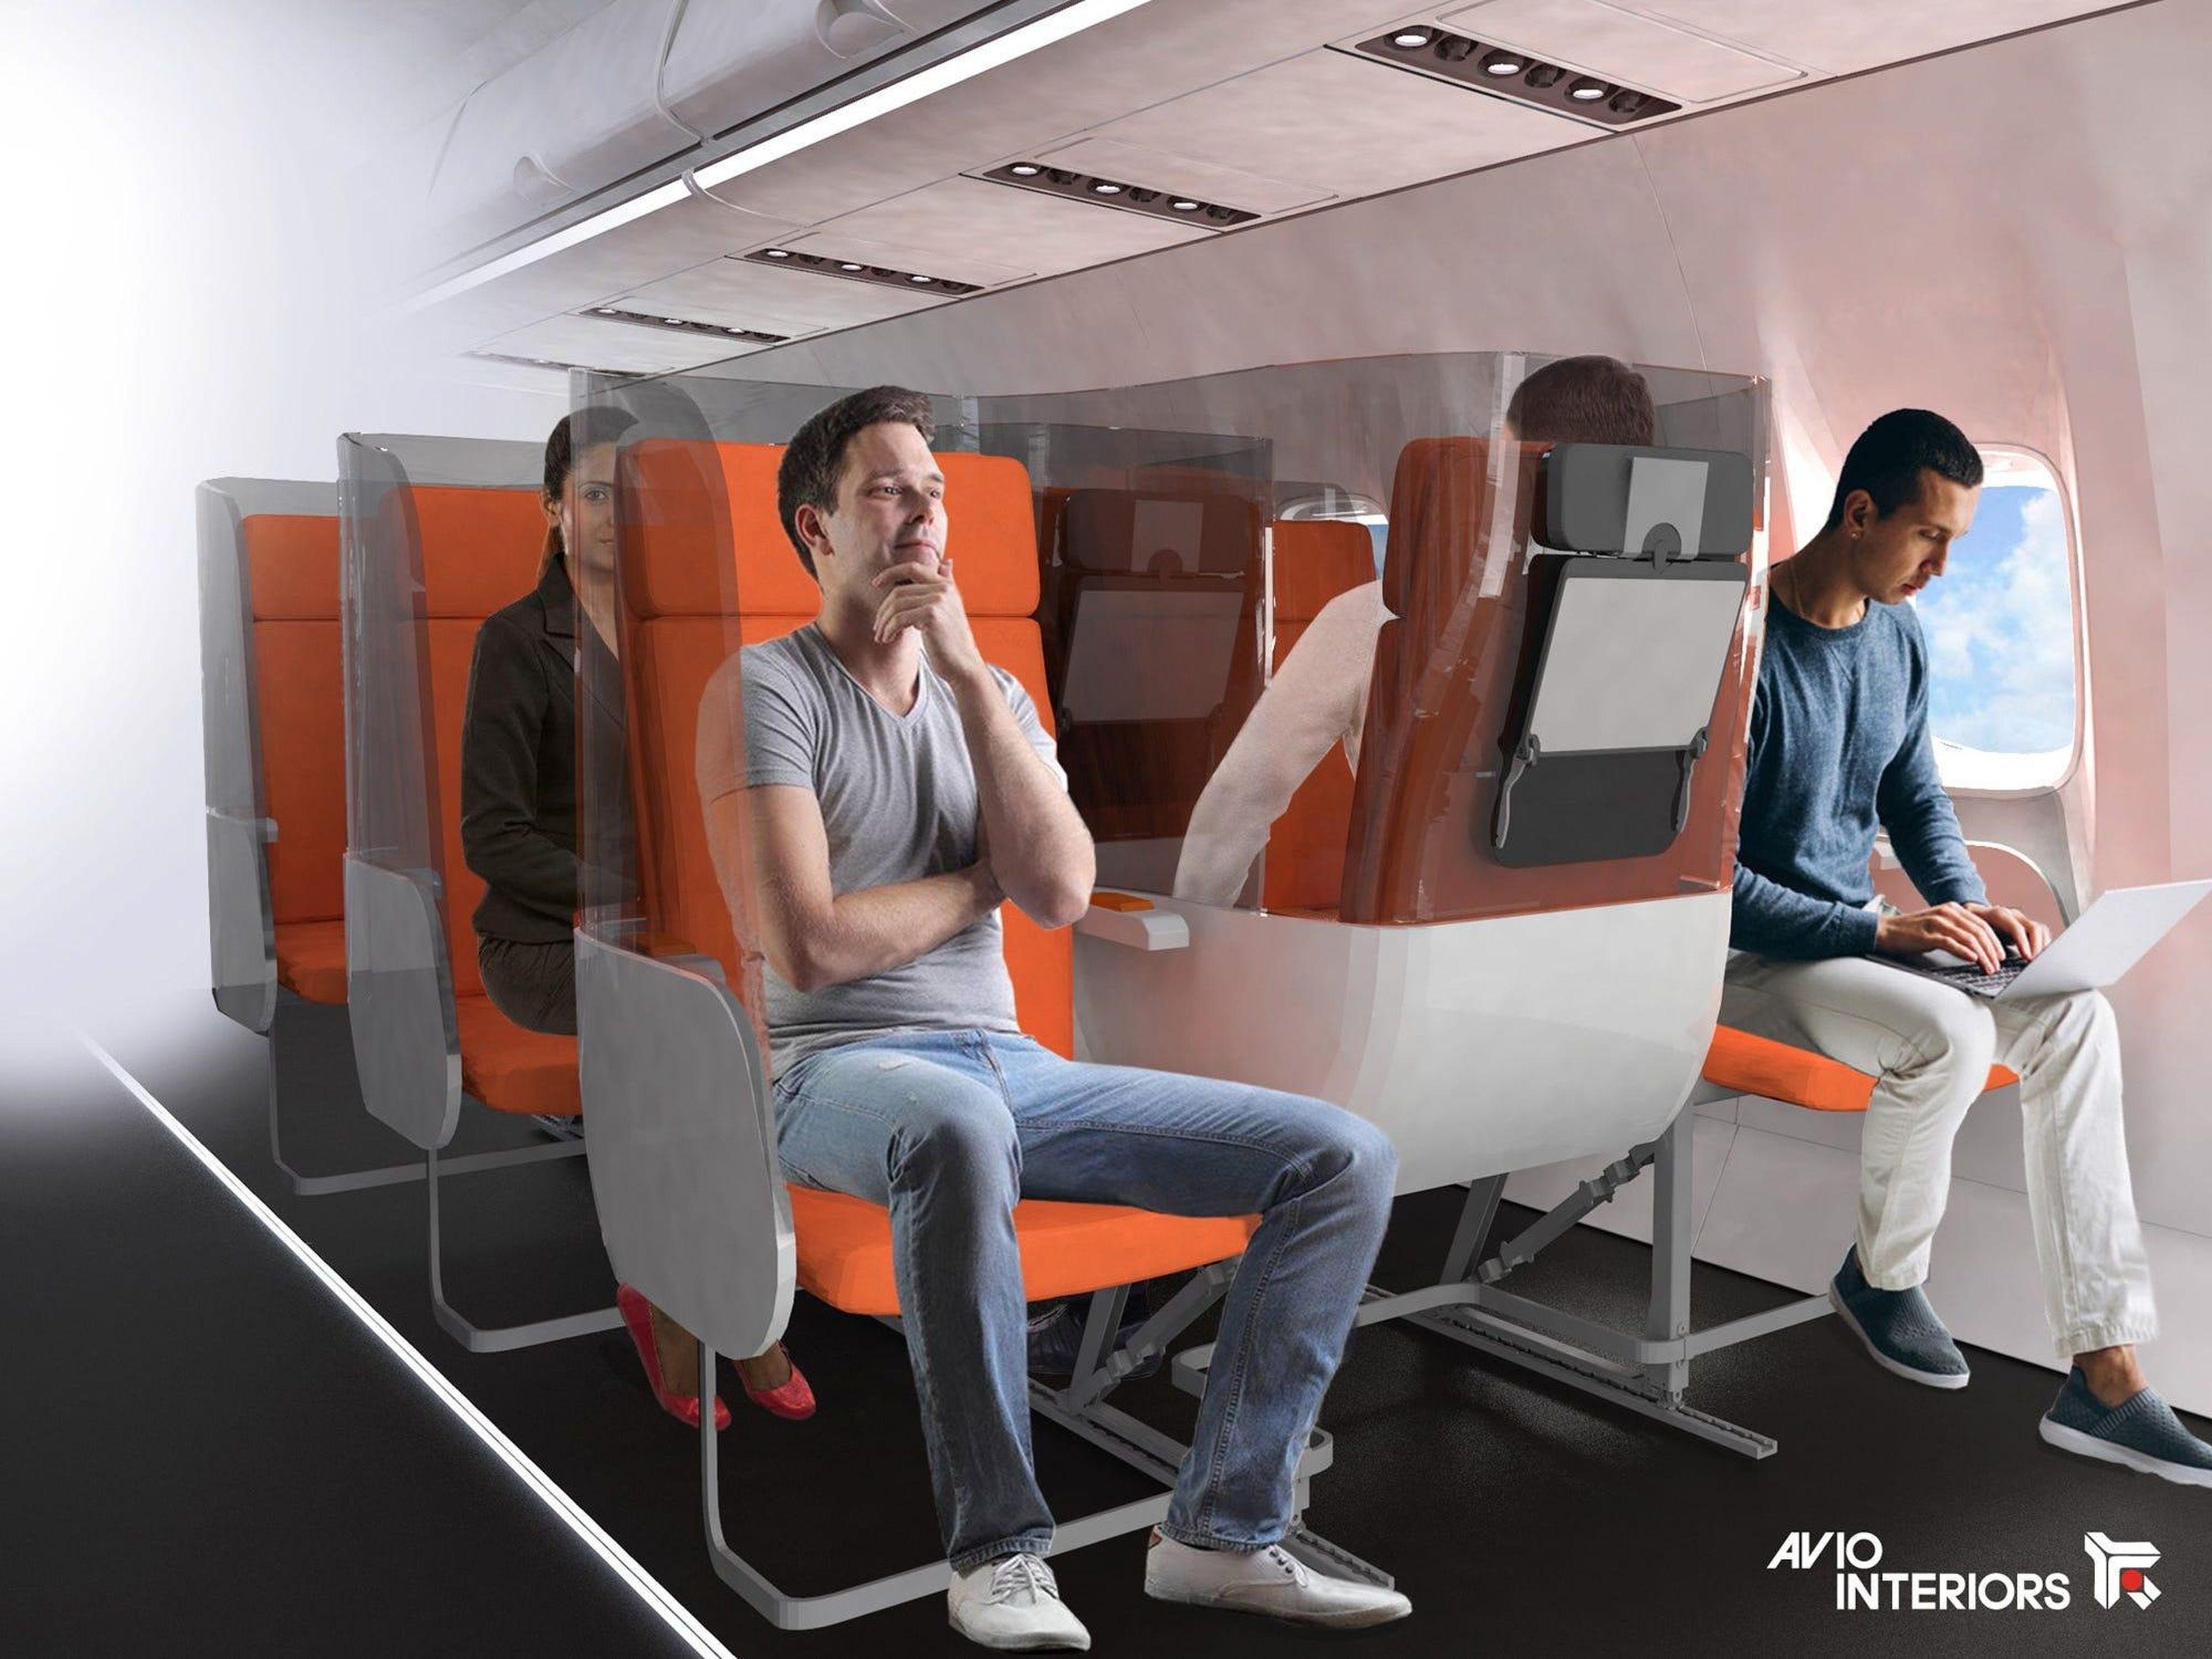 El diseño del avión podría incorporar medidas de distanciamiento social en el futuro.